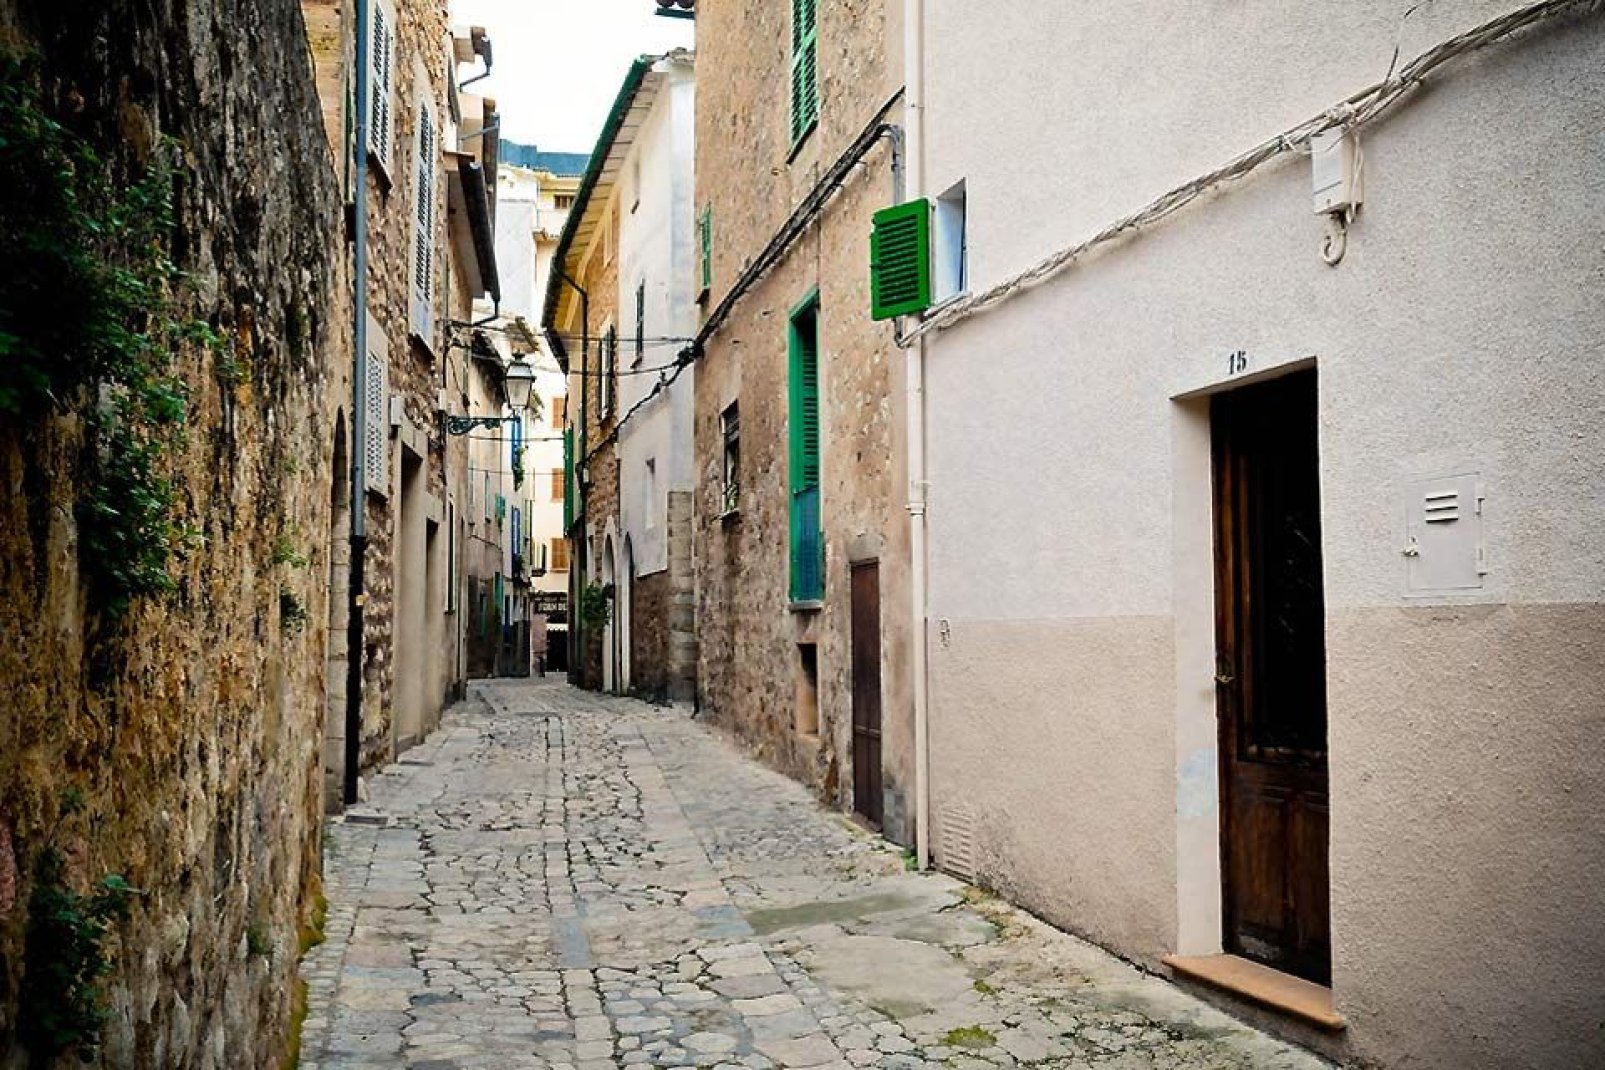 14.000 abitanti risiedono nella piccola città di Maiorca.